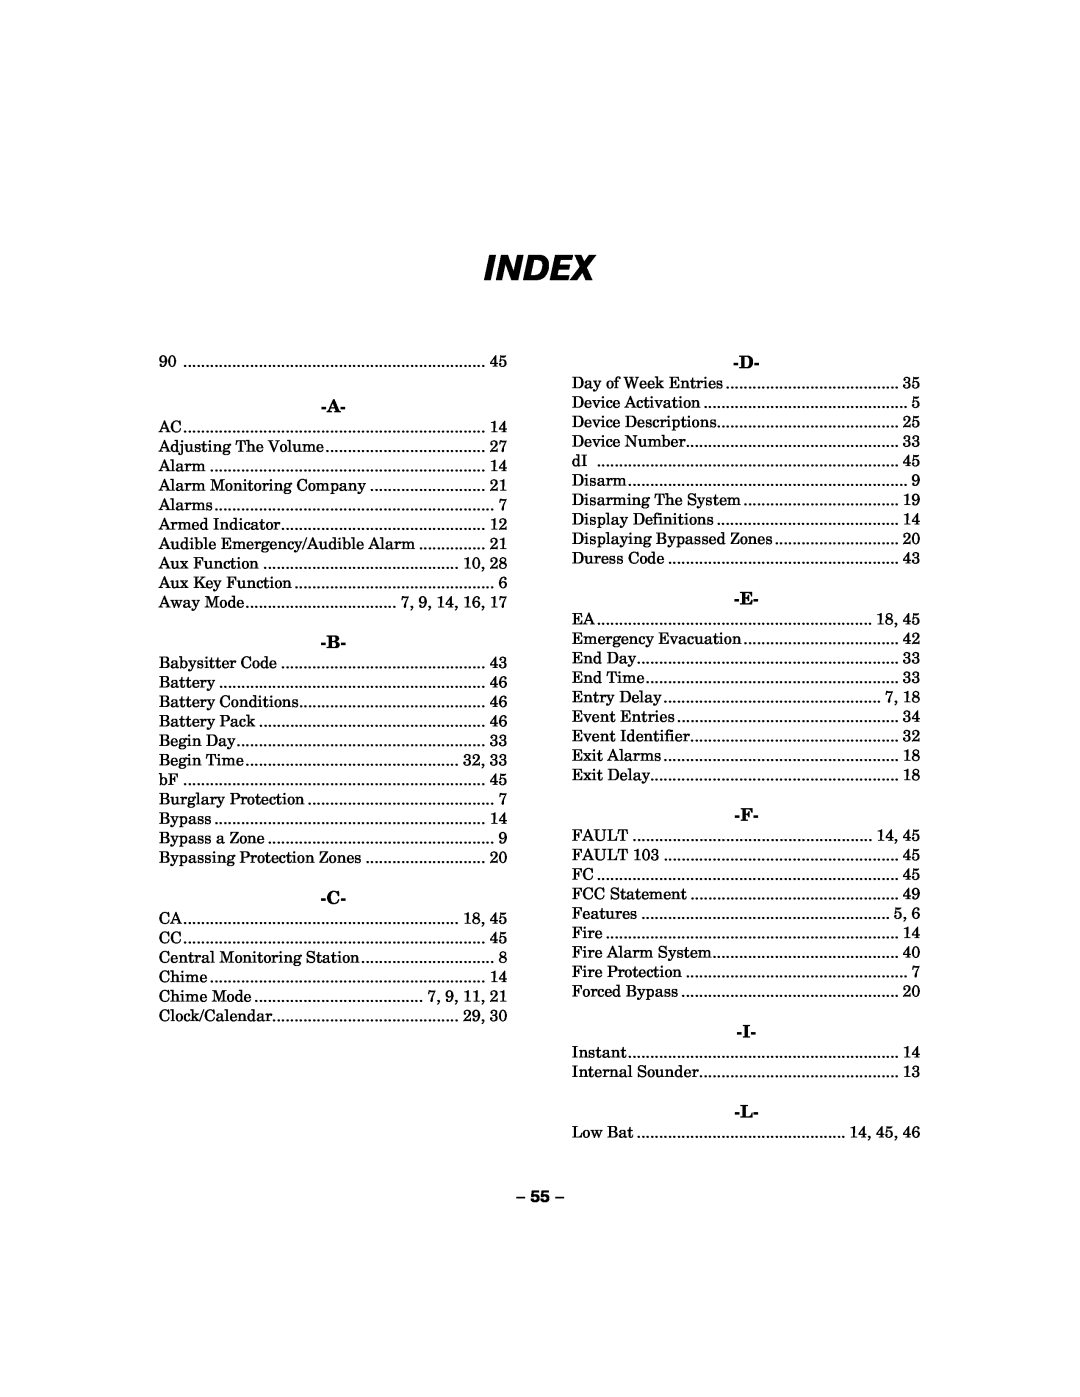 Honeywell LYNXR-I manual Index 